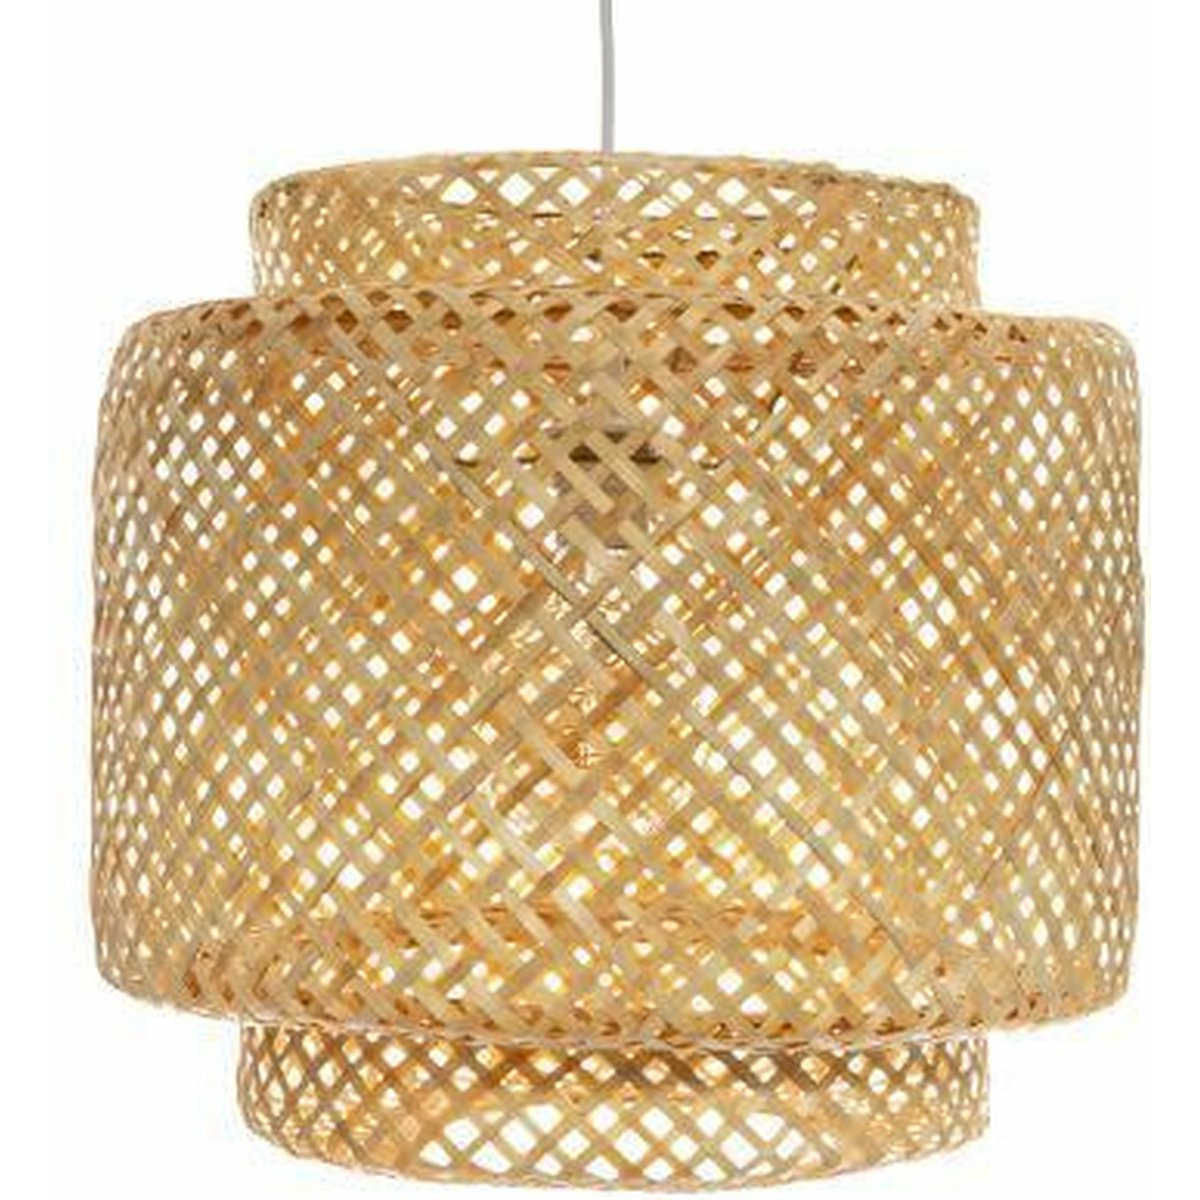 Hanglamp bamboe Boho 40 x 38 cm naturel gevlochten lampenkap Scandinavisch design